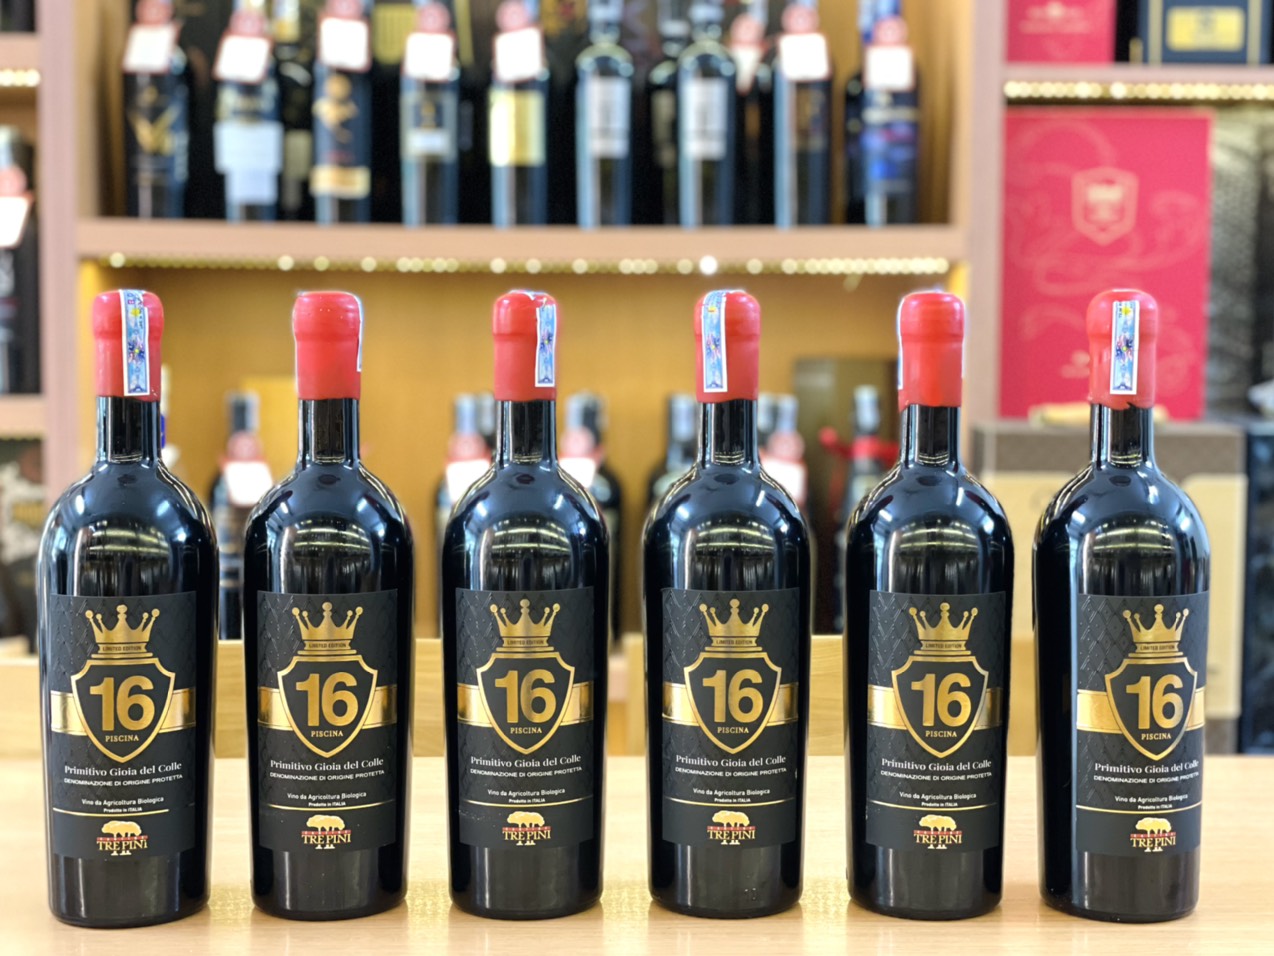 Rượu Vang 16 Trepini Piscina Primitivo Vương Miện được làm từ 100% giống nho Primitivo, là một loại nho chủ yếu được tìm thấy ở Puglia